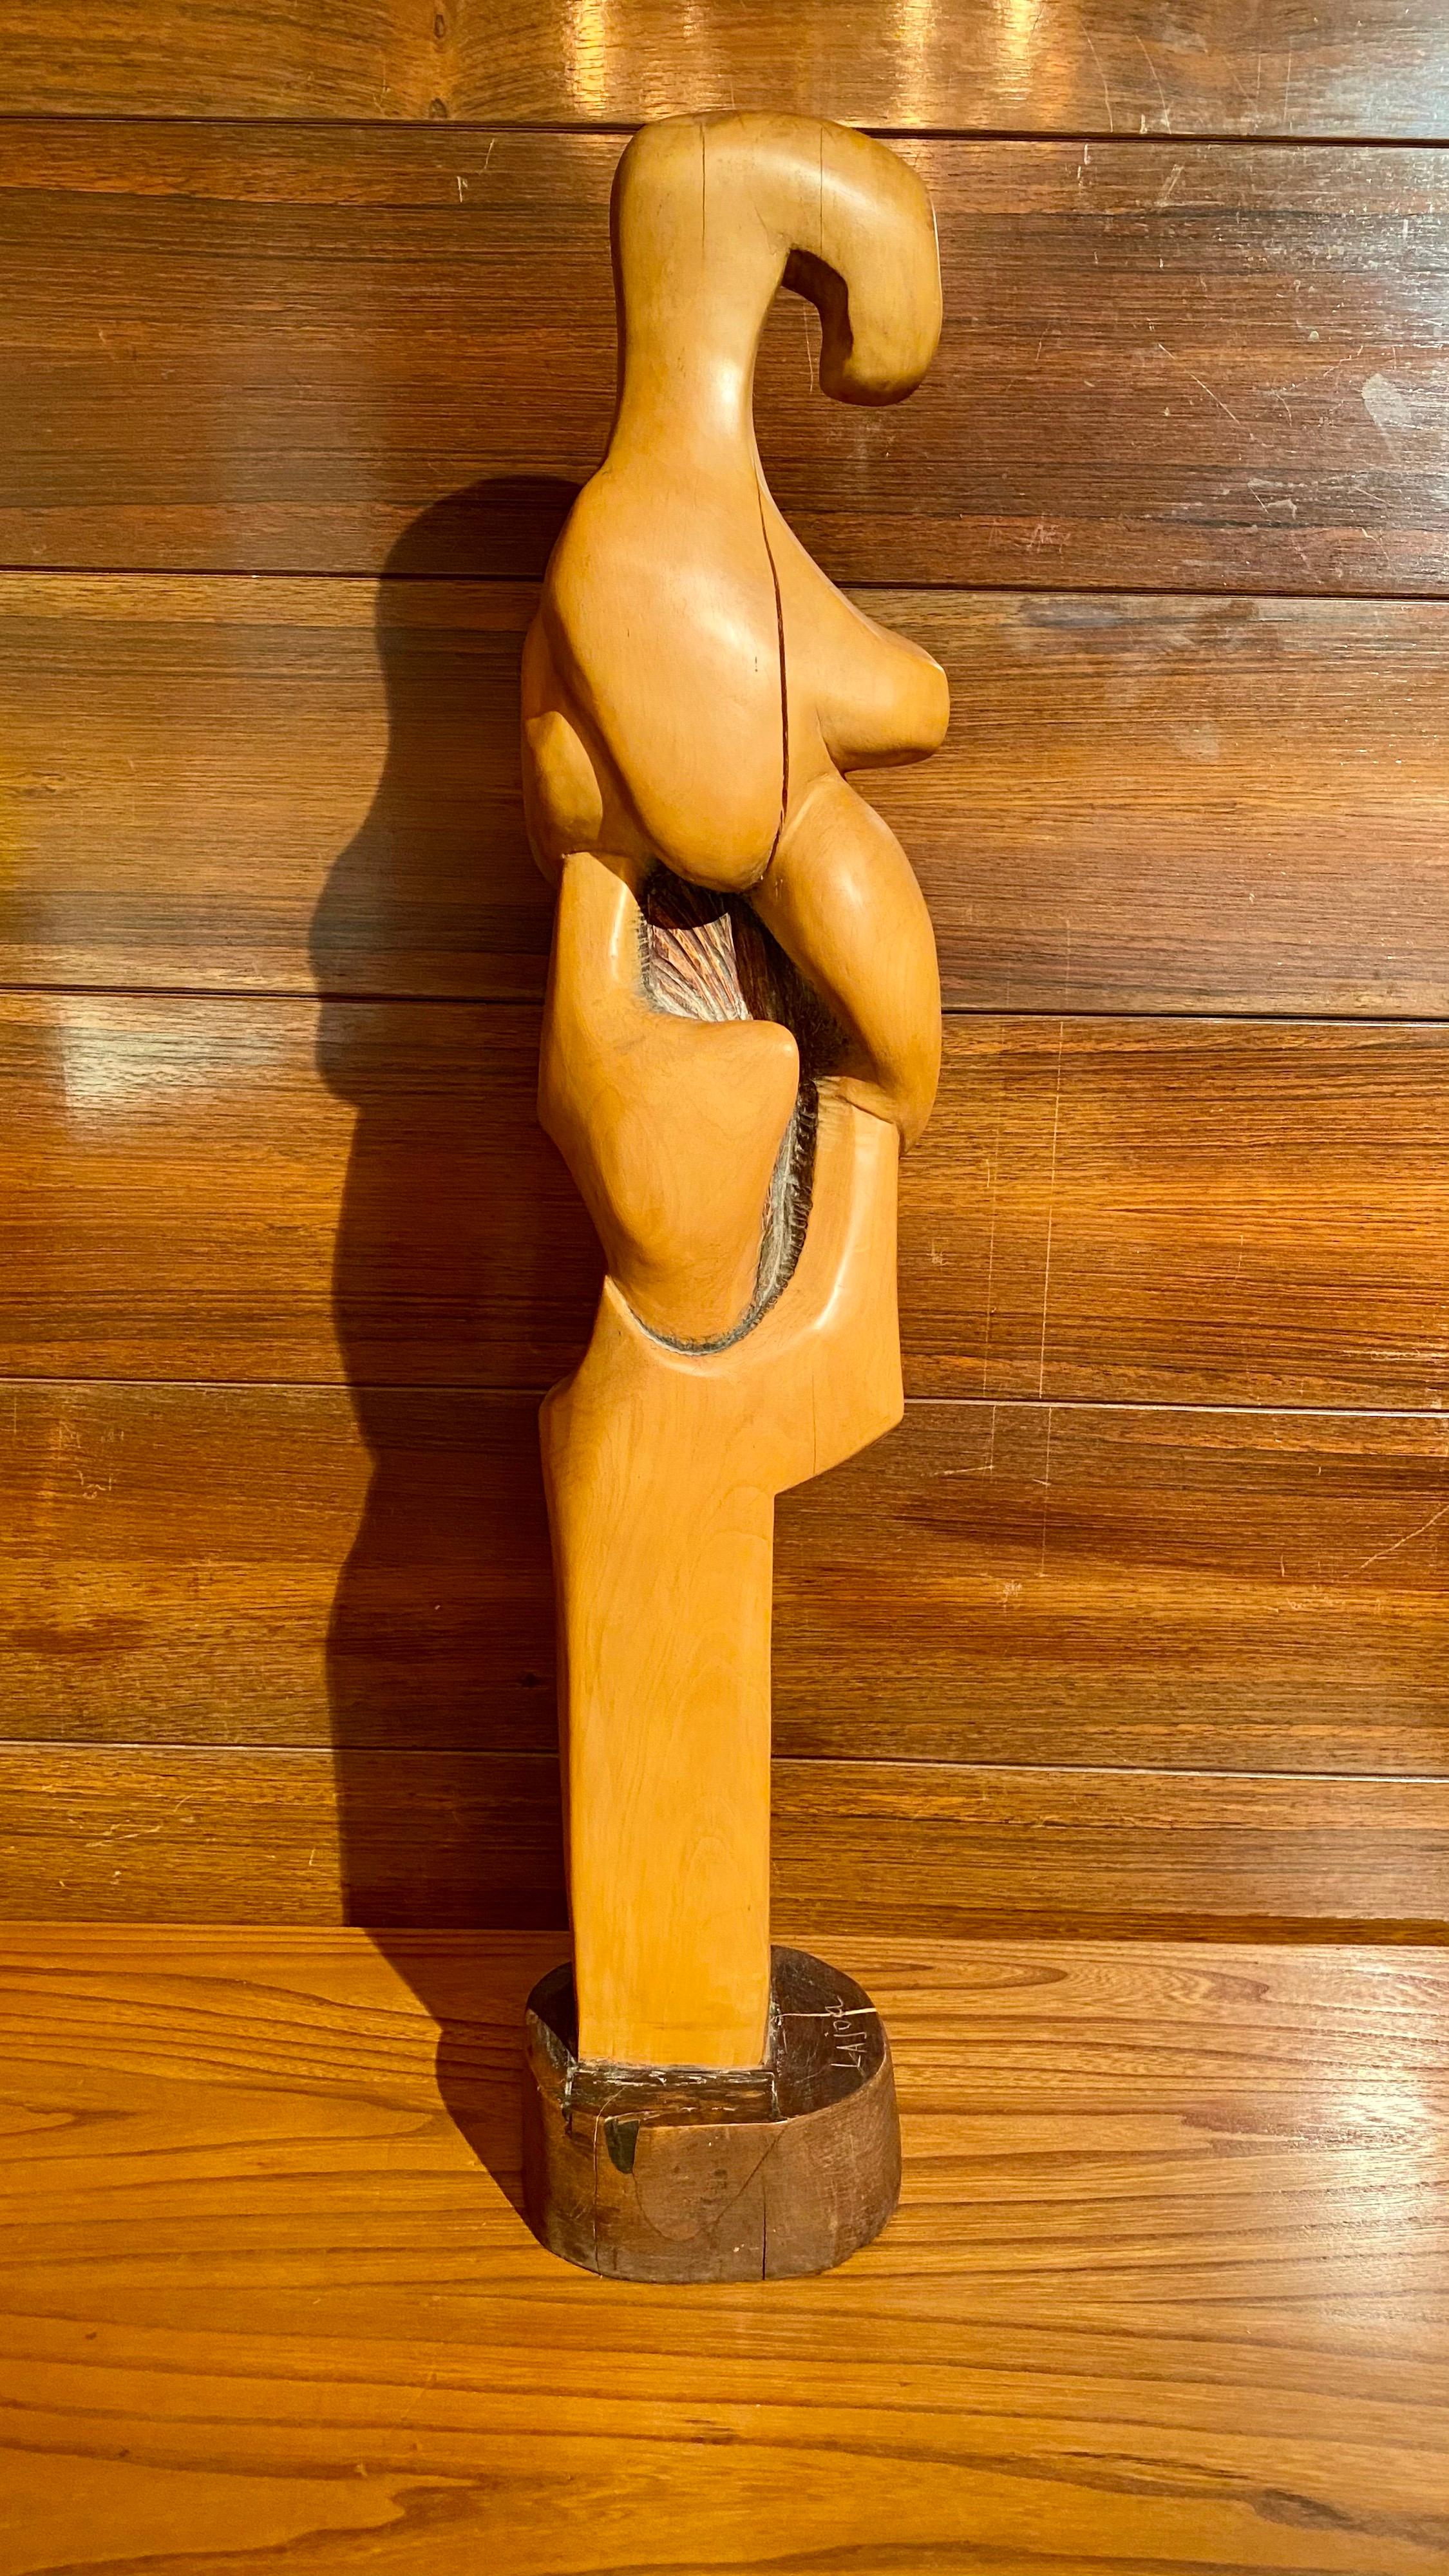 Sculpture abstraite en bois sculpté, représentant une maternité, signée Lajoa. Très belle exécution et belle patine ancienne.